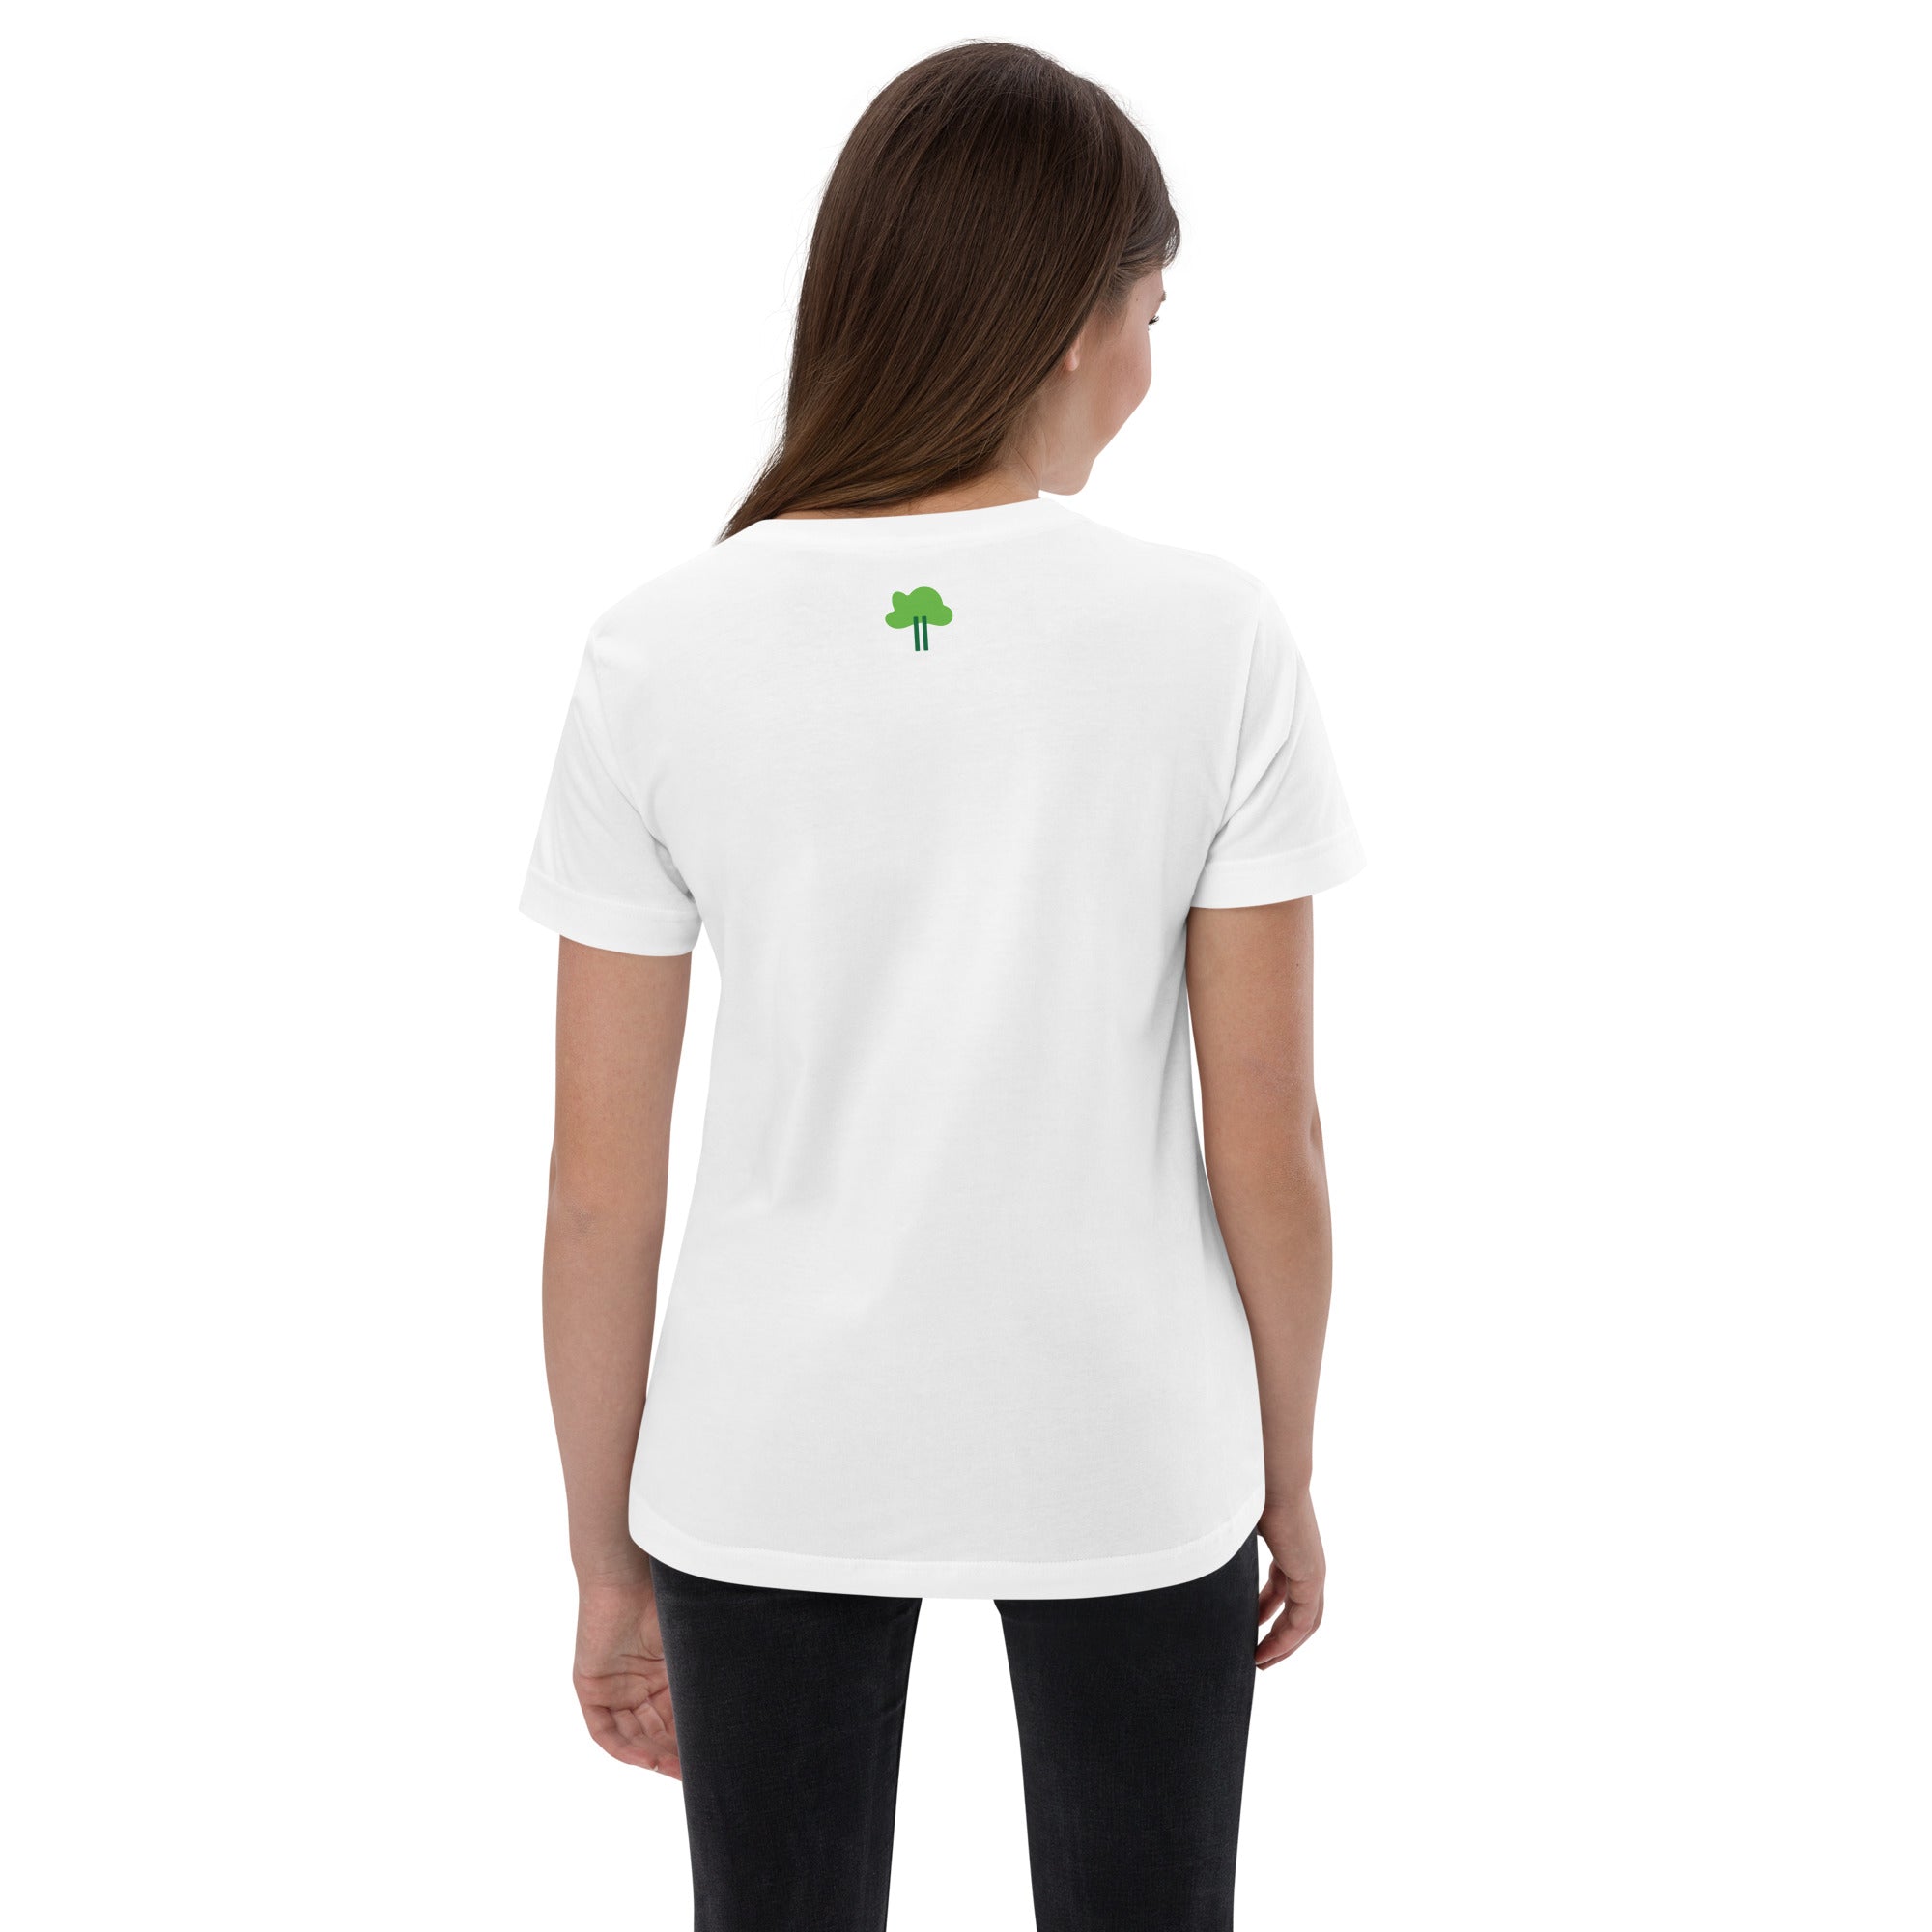 I Temp - Sabana - K14 | Youth jersey t-shirt